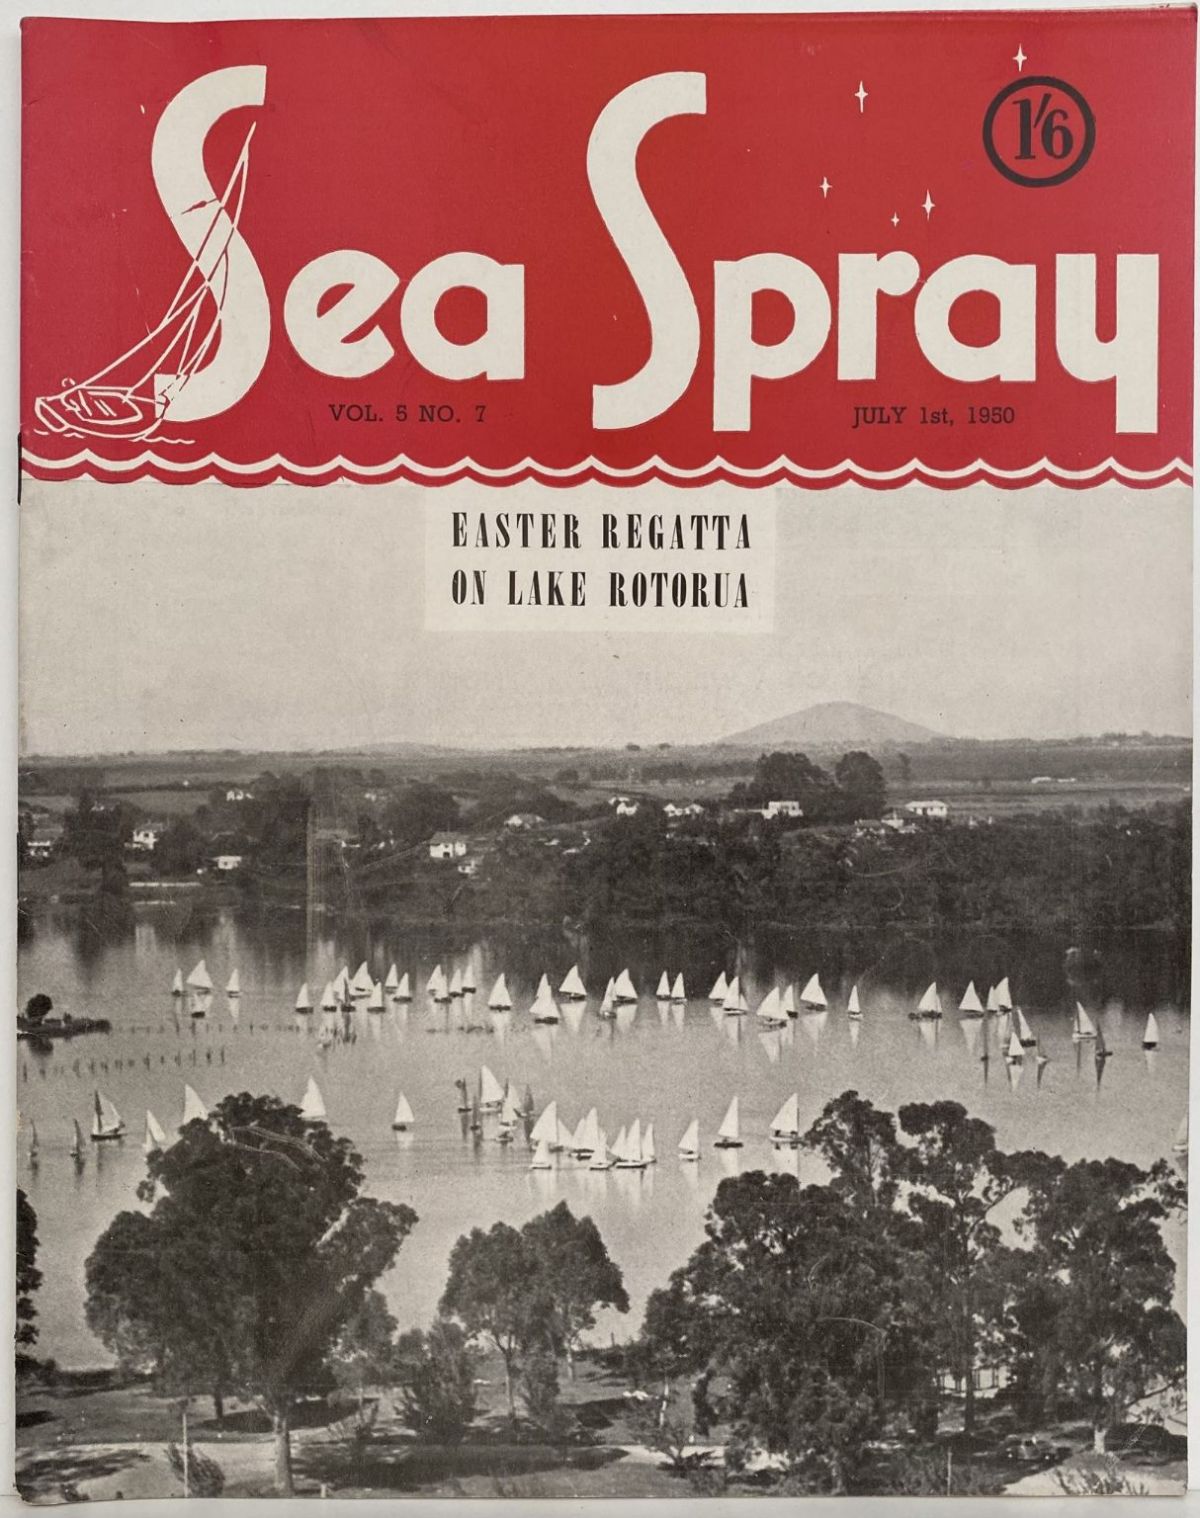 VINTAGE MAGAZINE: Sea Spray - Vol. 5, No. 7 - July 1950